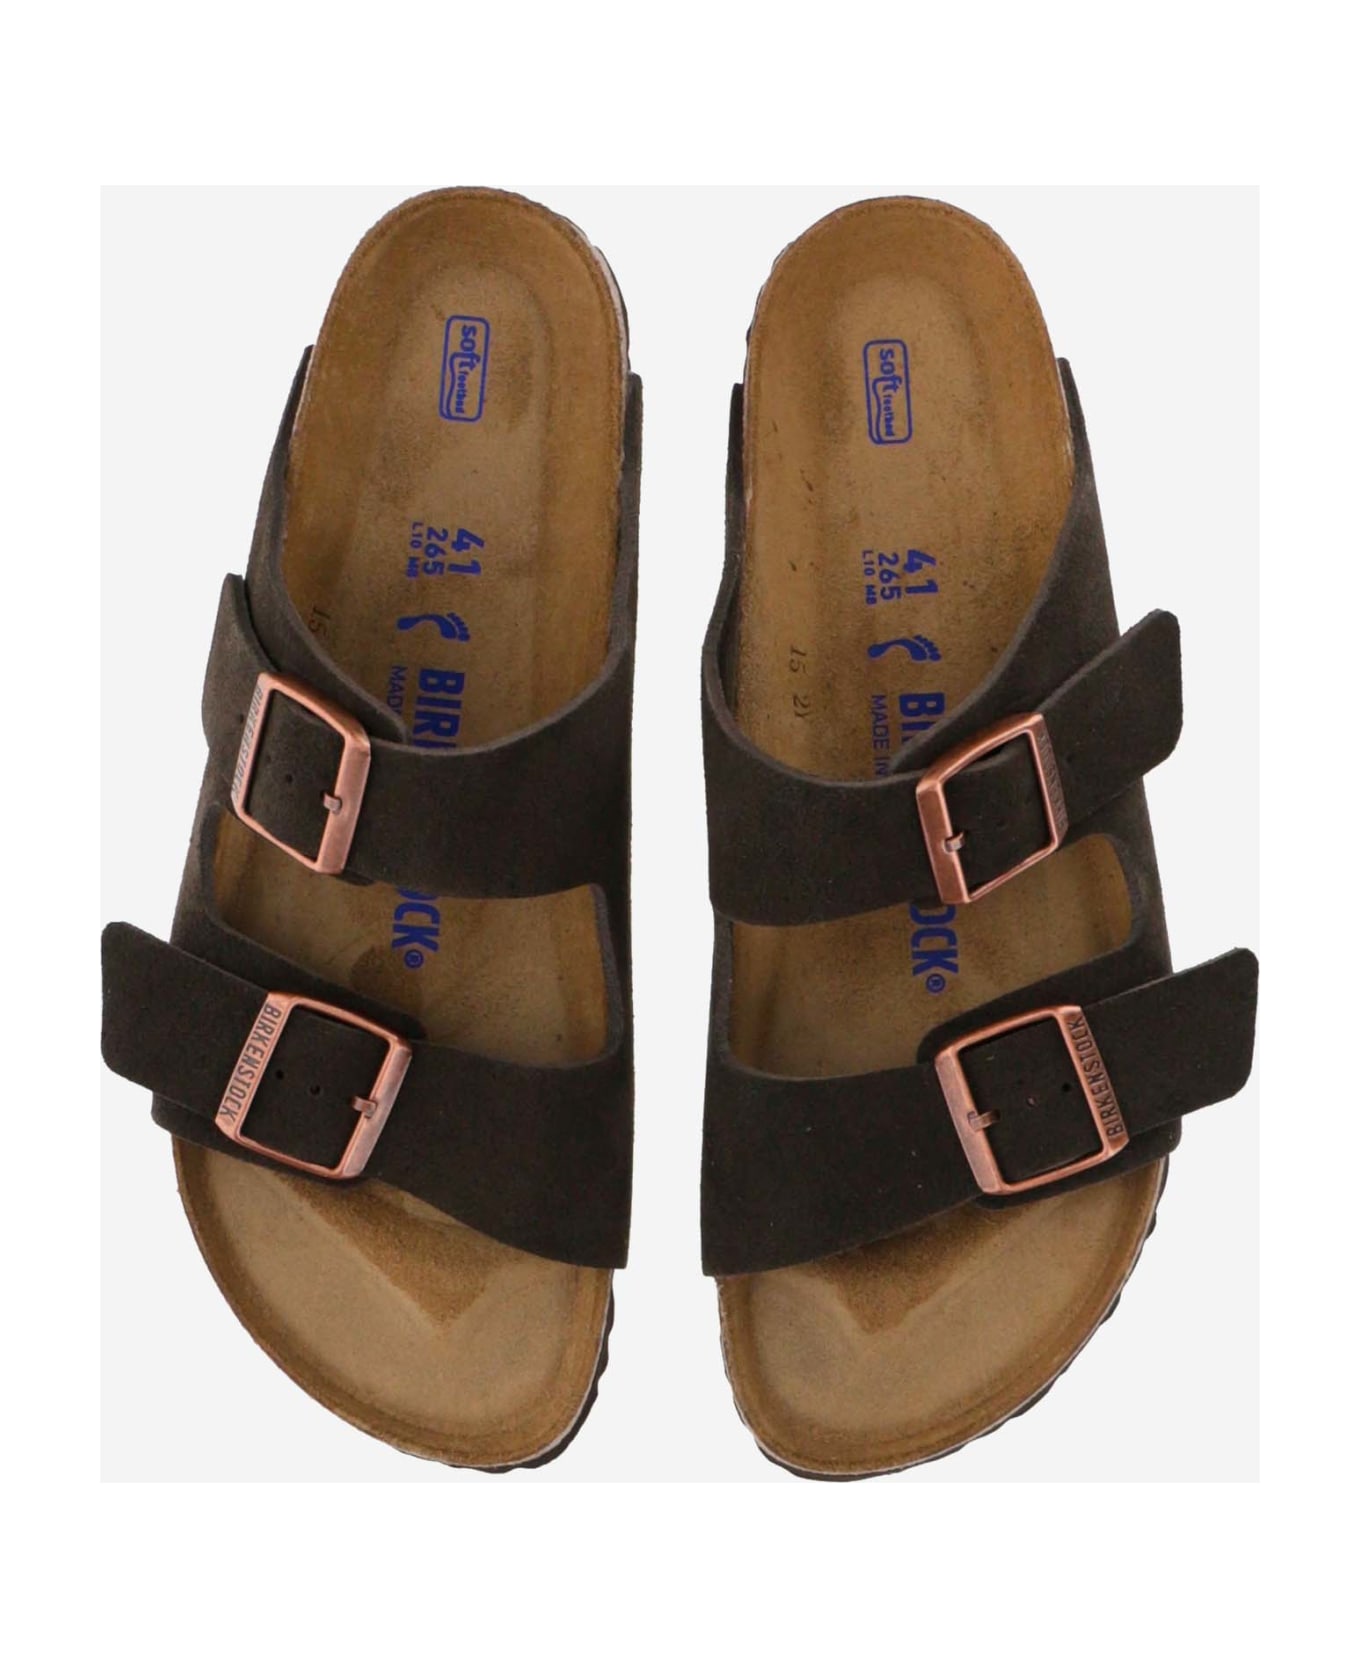 Birkenstock Arizona Suede Sandals - mocca